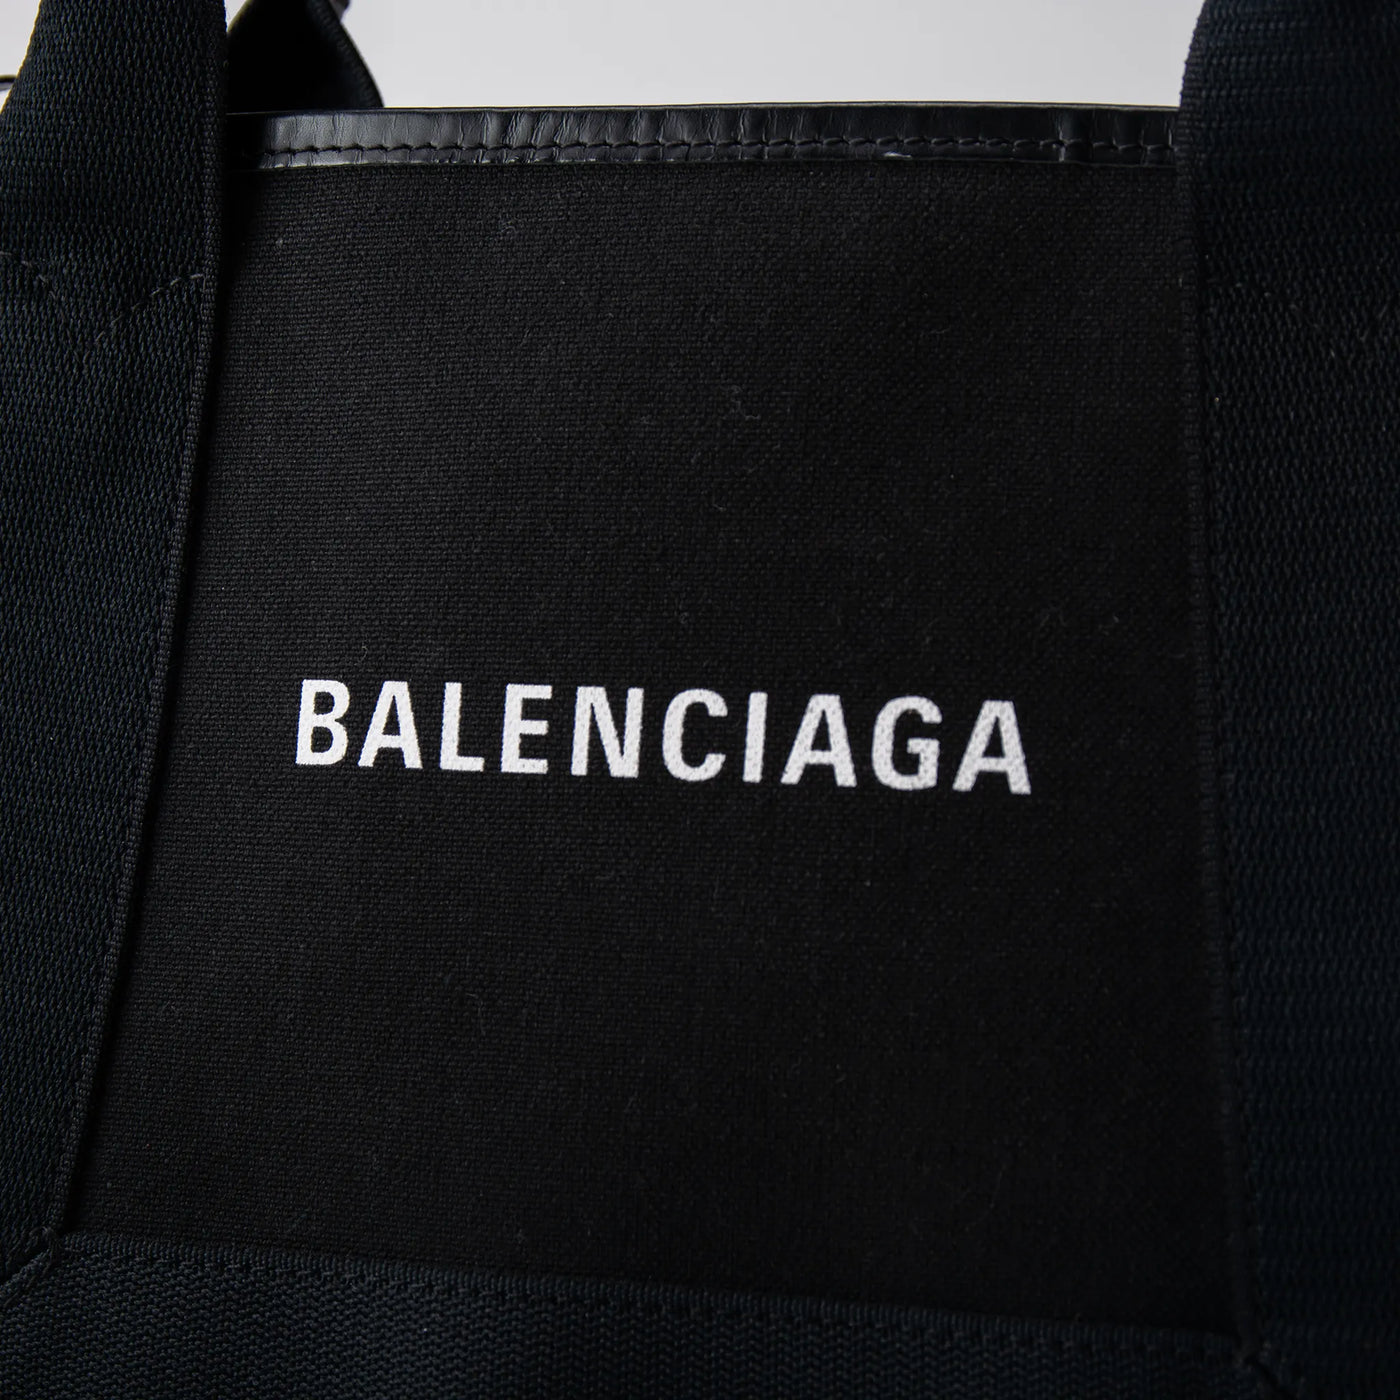 【BALENCIAGA・バレンシアガ】ブラック/カバス/BA230001/ハンドバッグ/USED